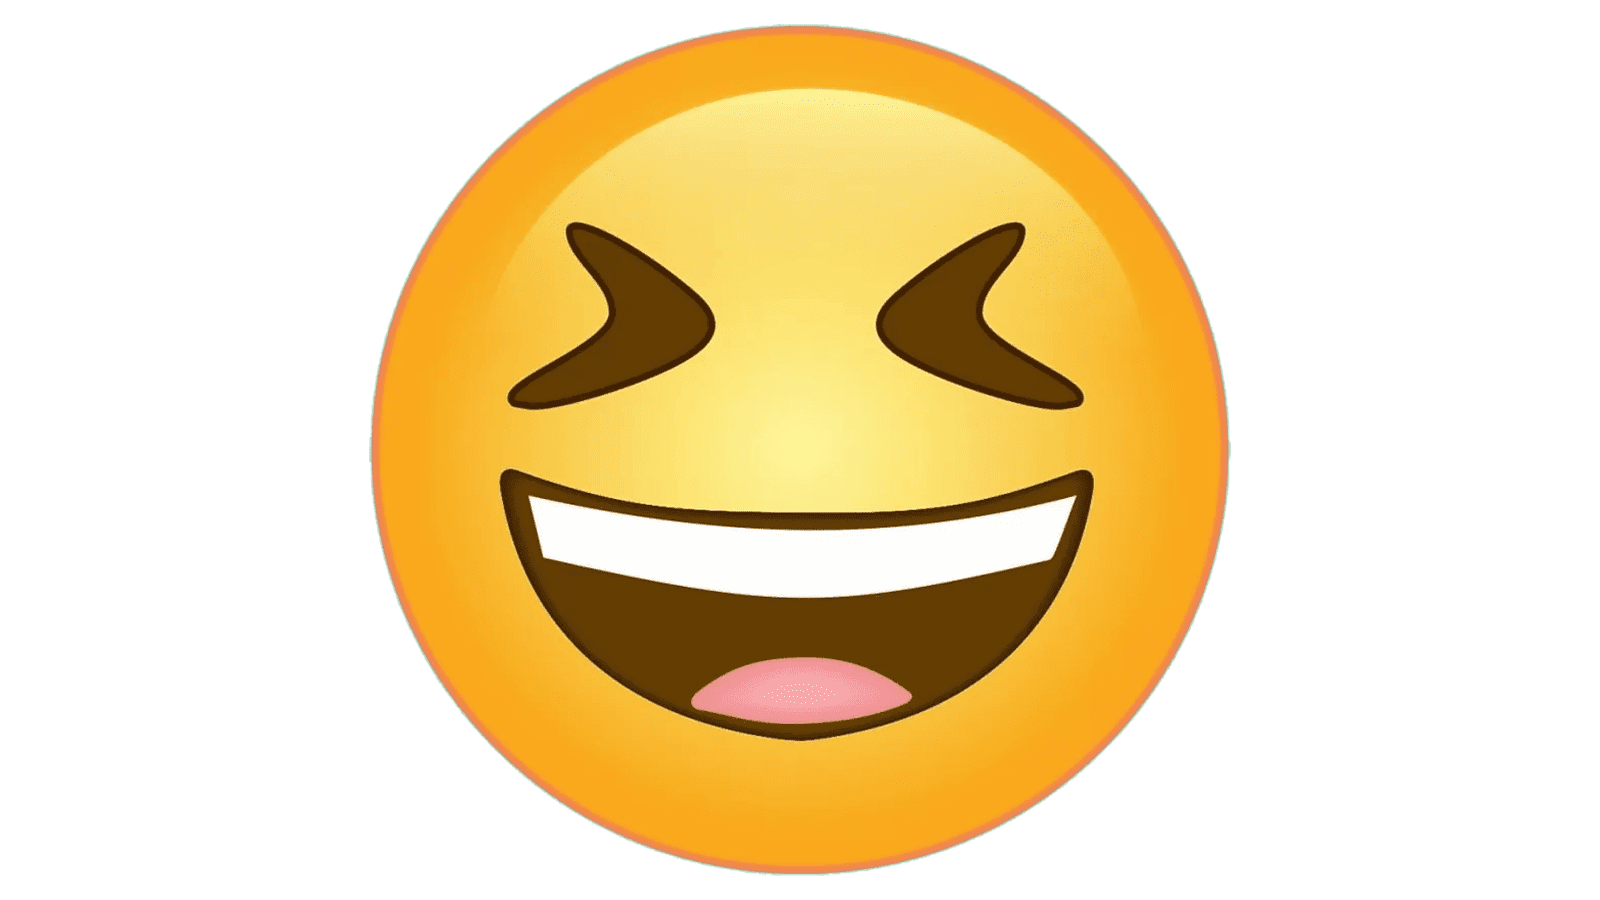 emoji laughing face